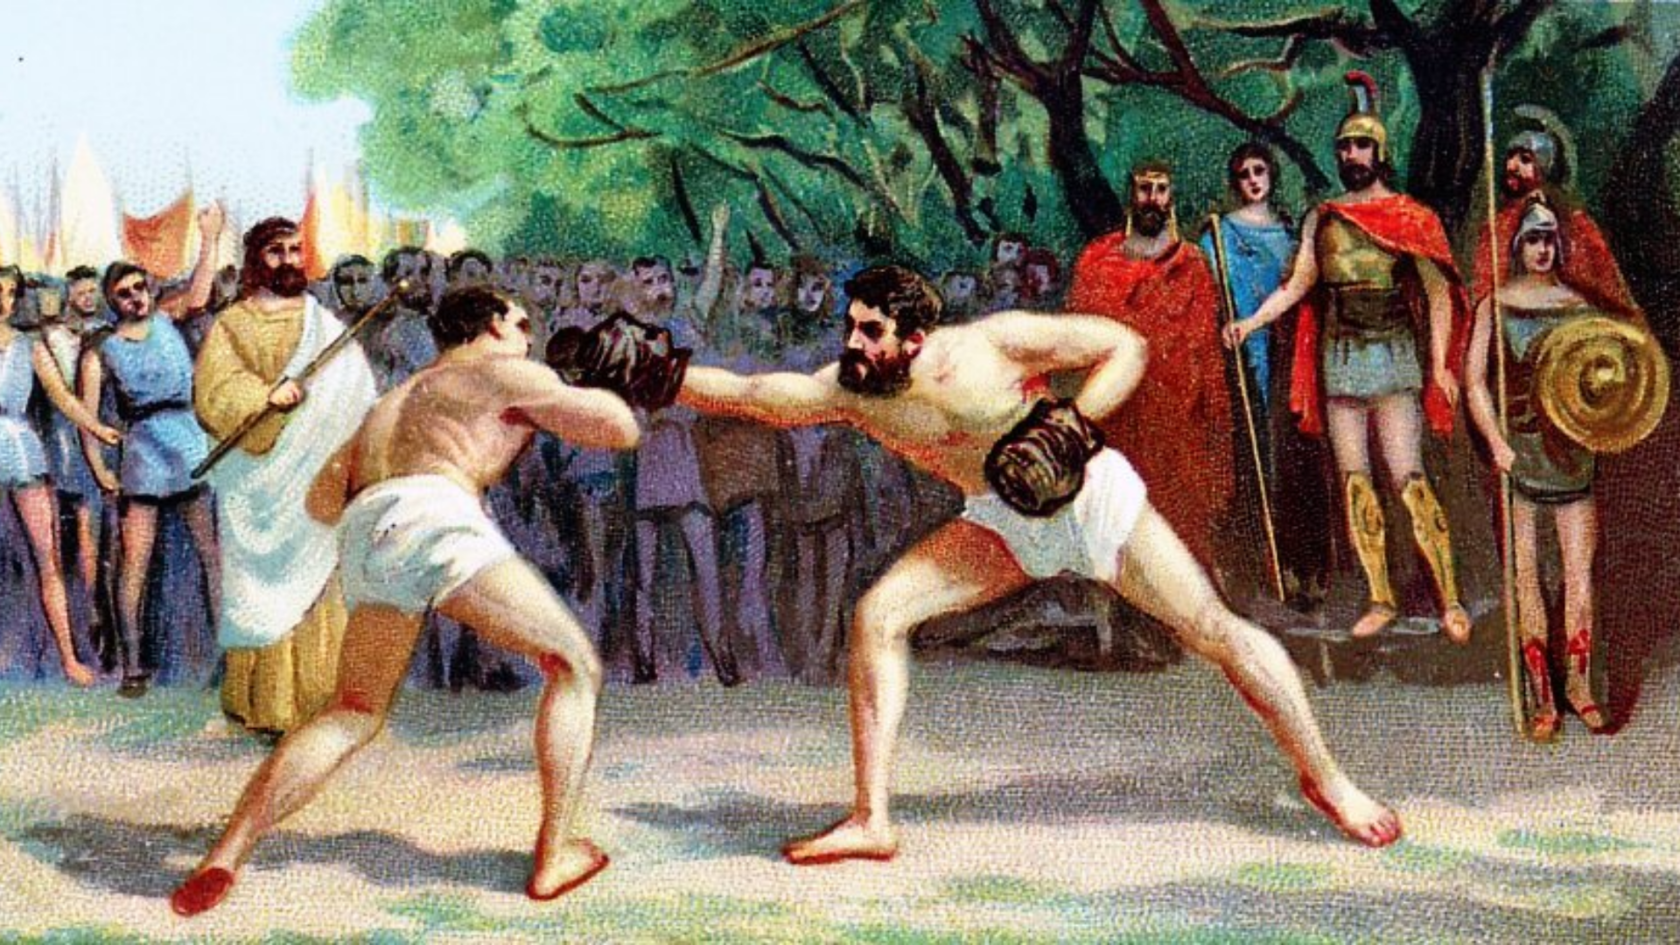 Войны во время олимпийских игр. Кулачный бой в древней Греции на Олимпийских играх. Греция спорт в древности спорт. Кулачный бой древняя Олимпия Олимпийские игры.